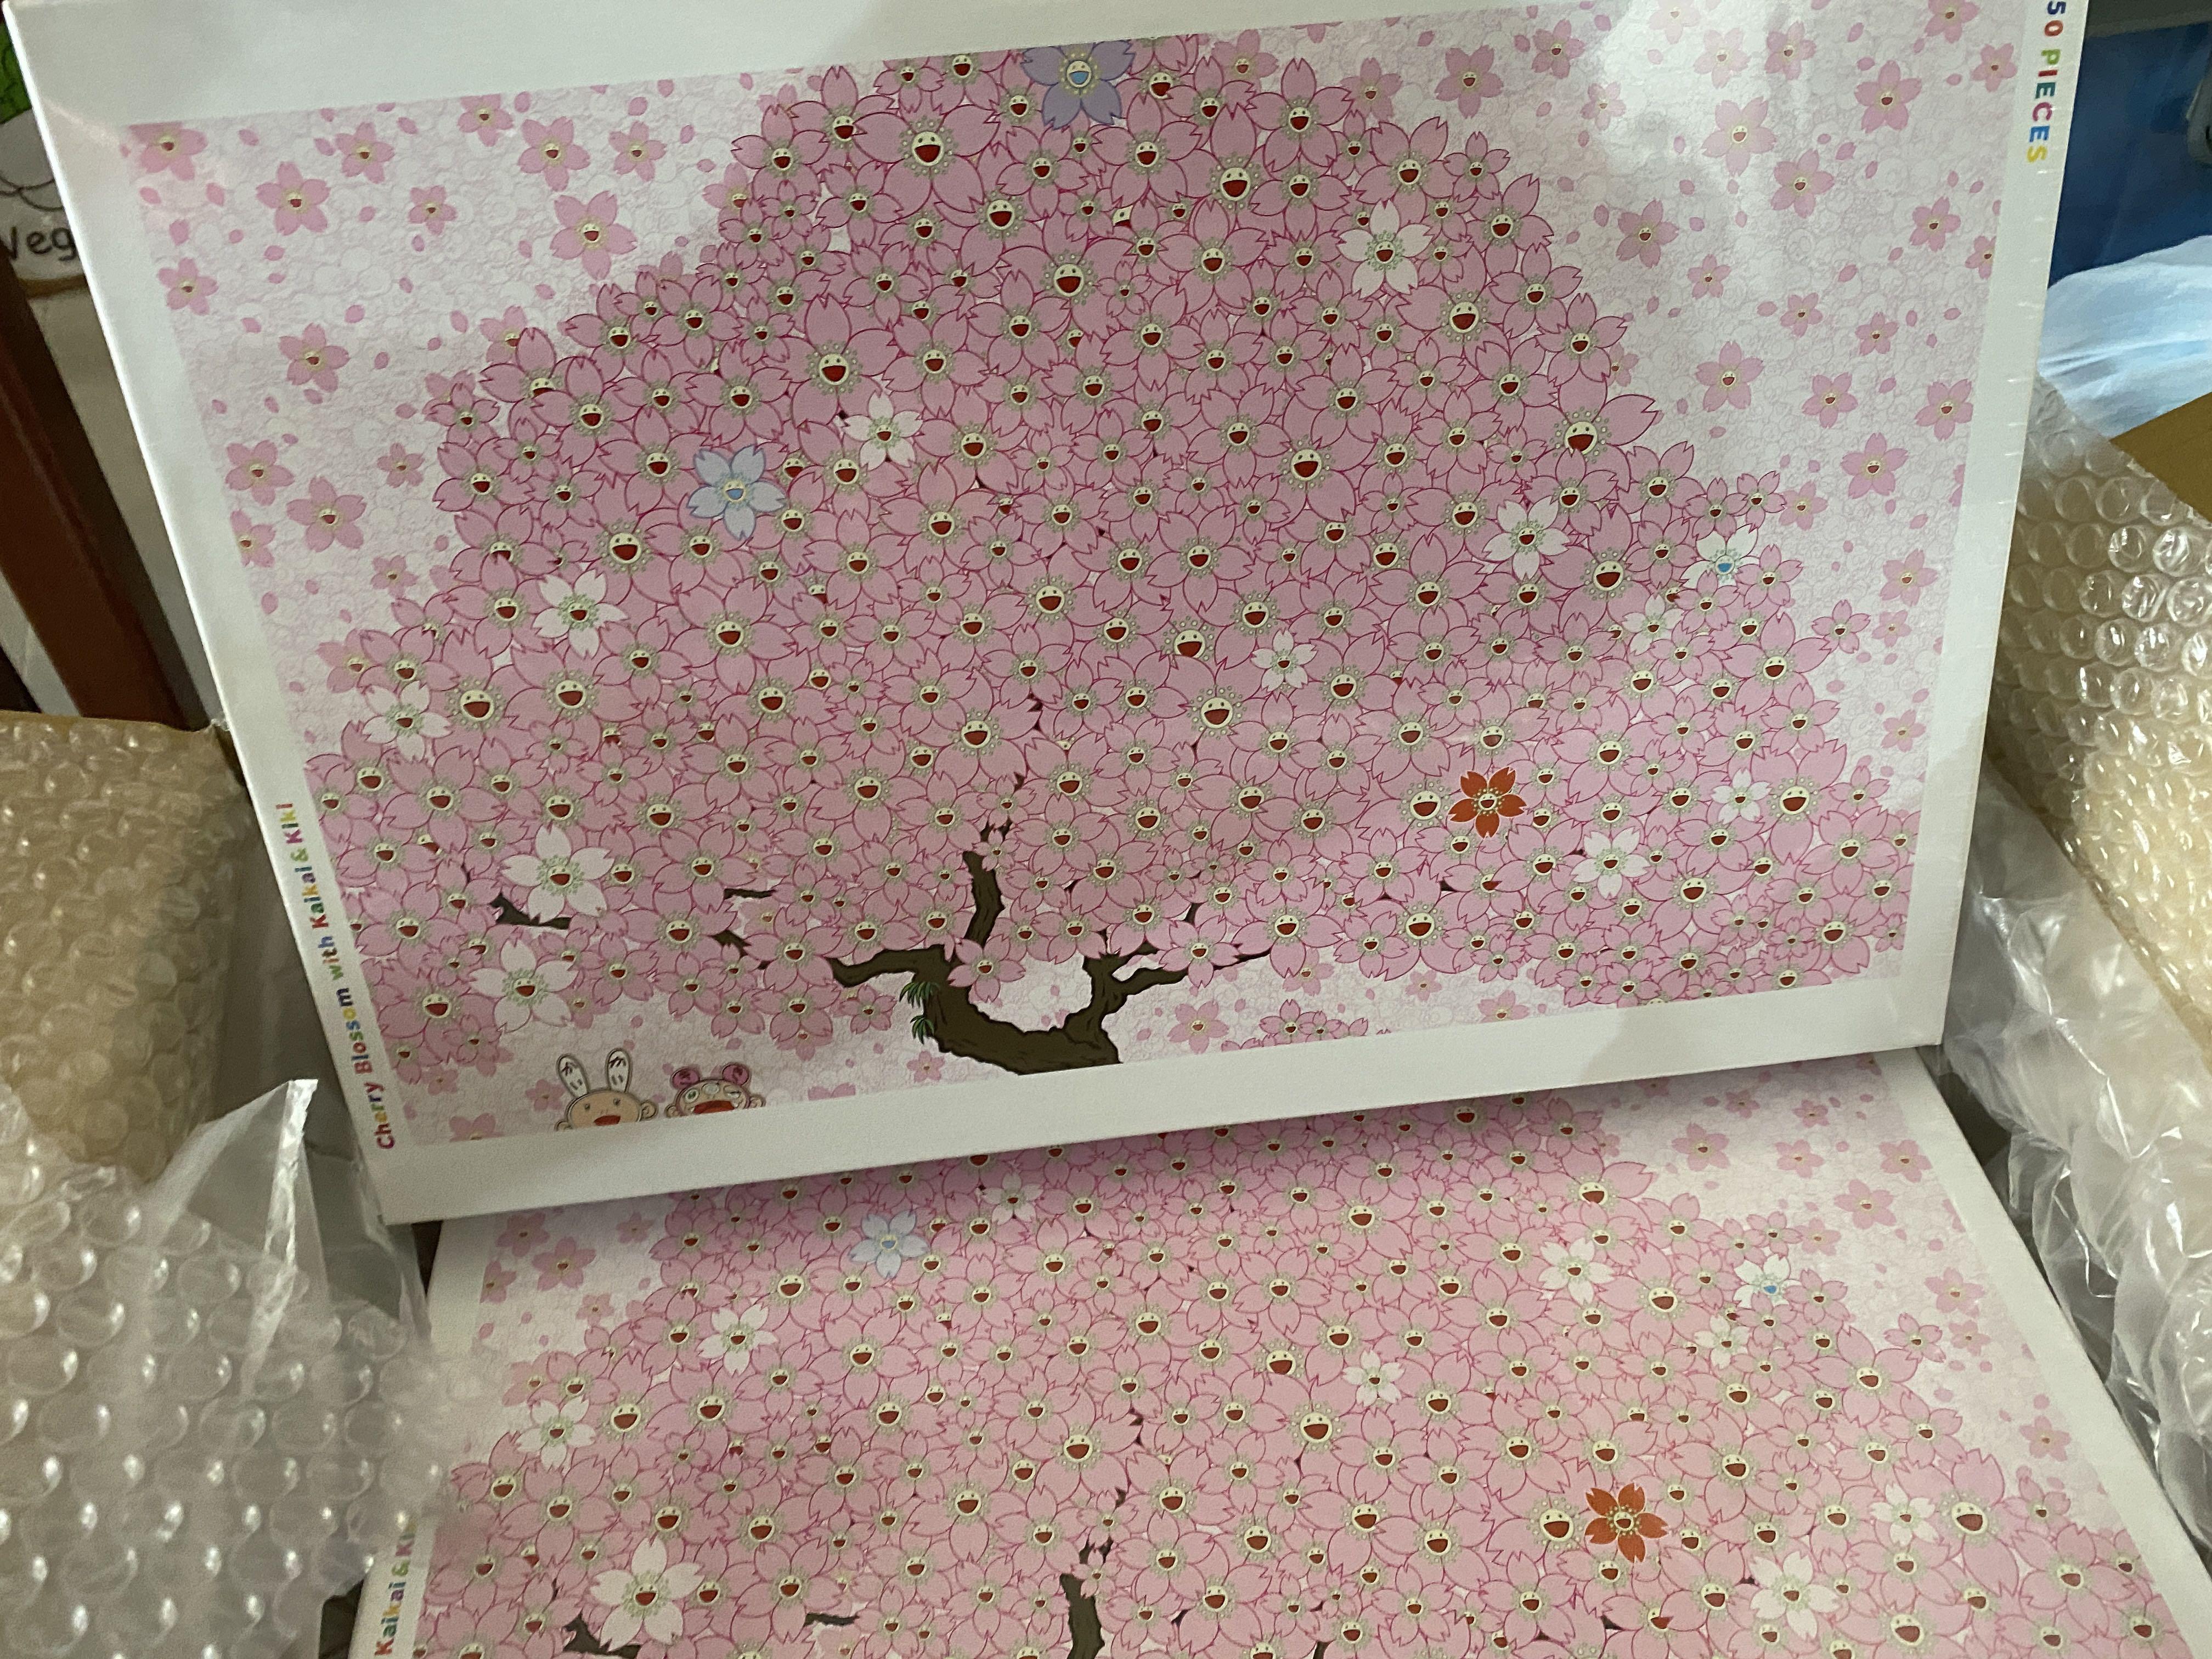 3箱 カイカイキキ 村上隆 パズル cherry blossom QHIOKFWqWm - emily 